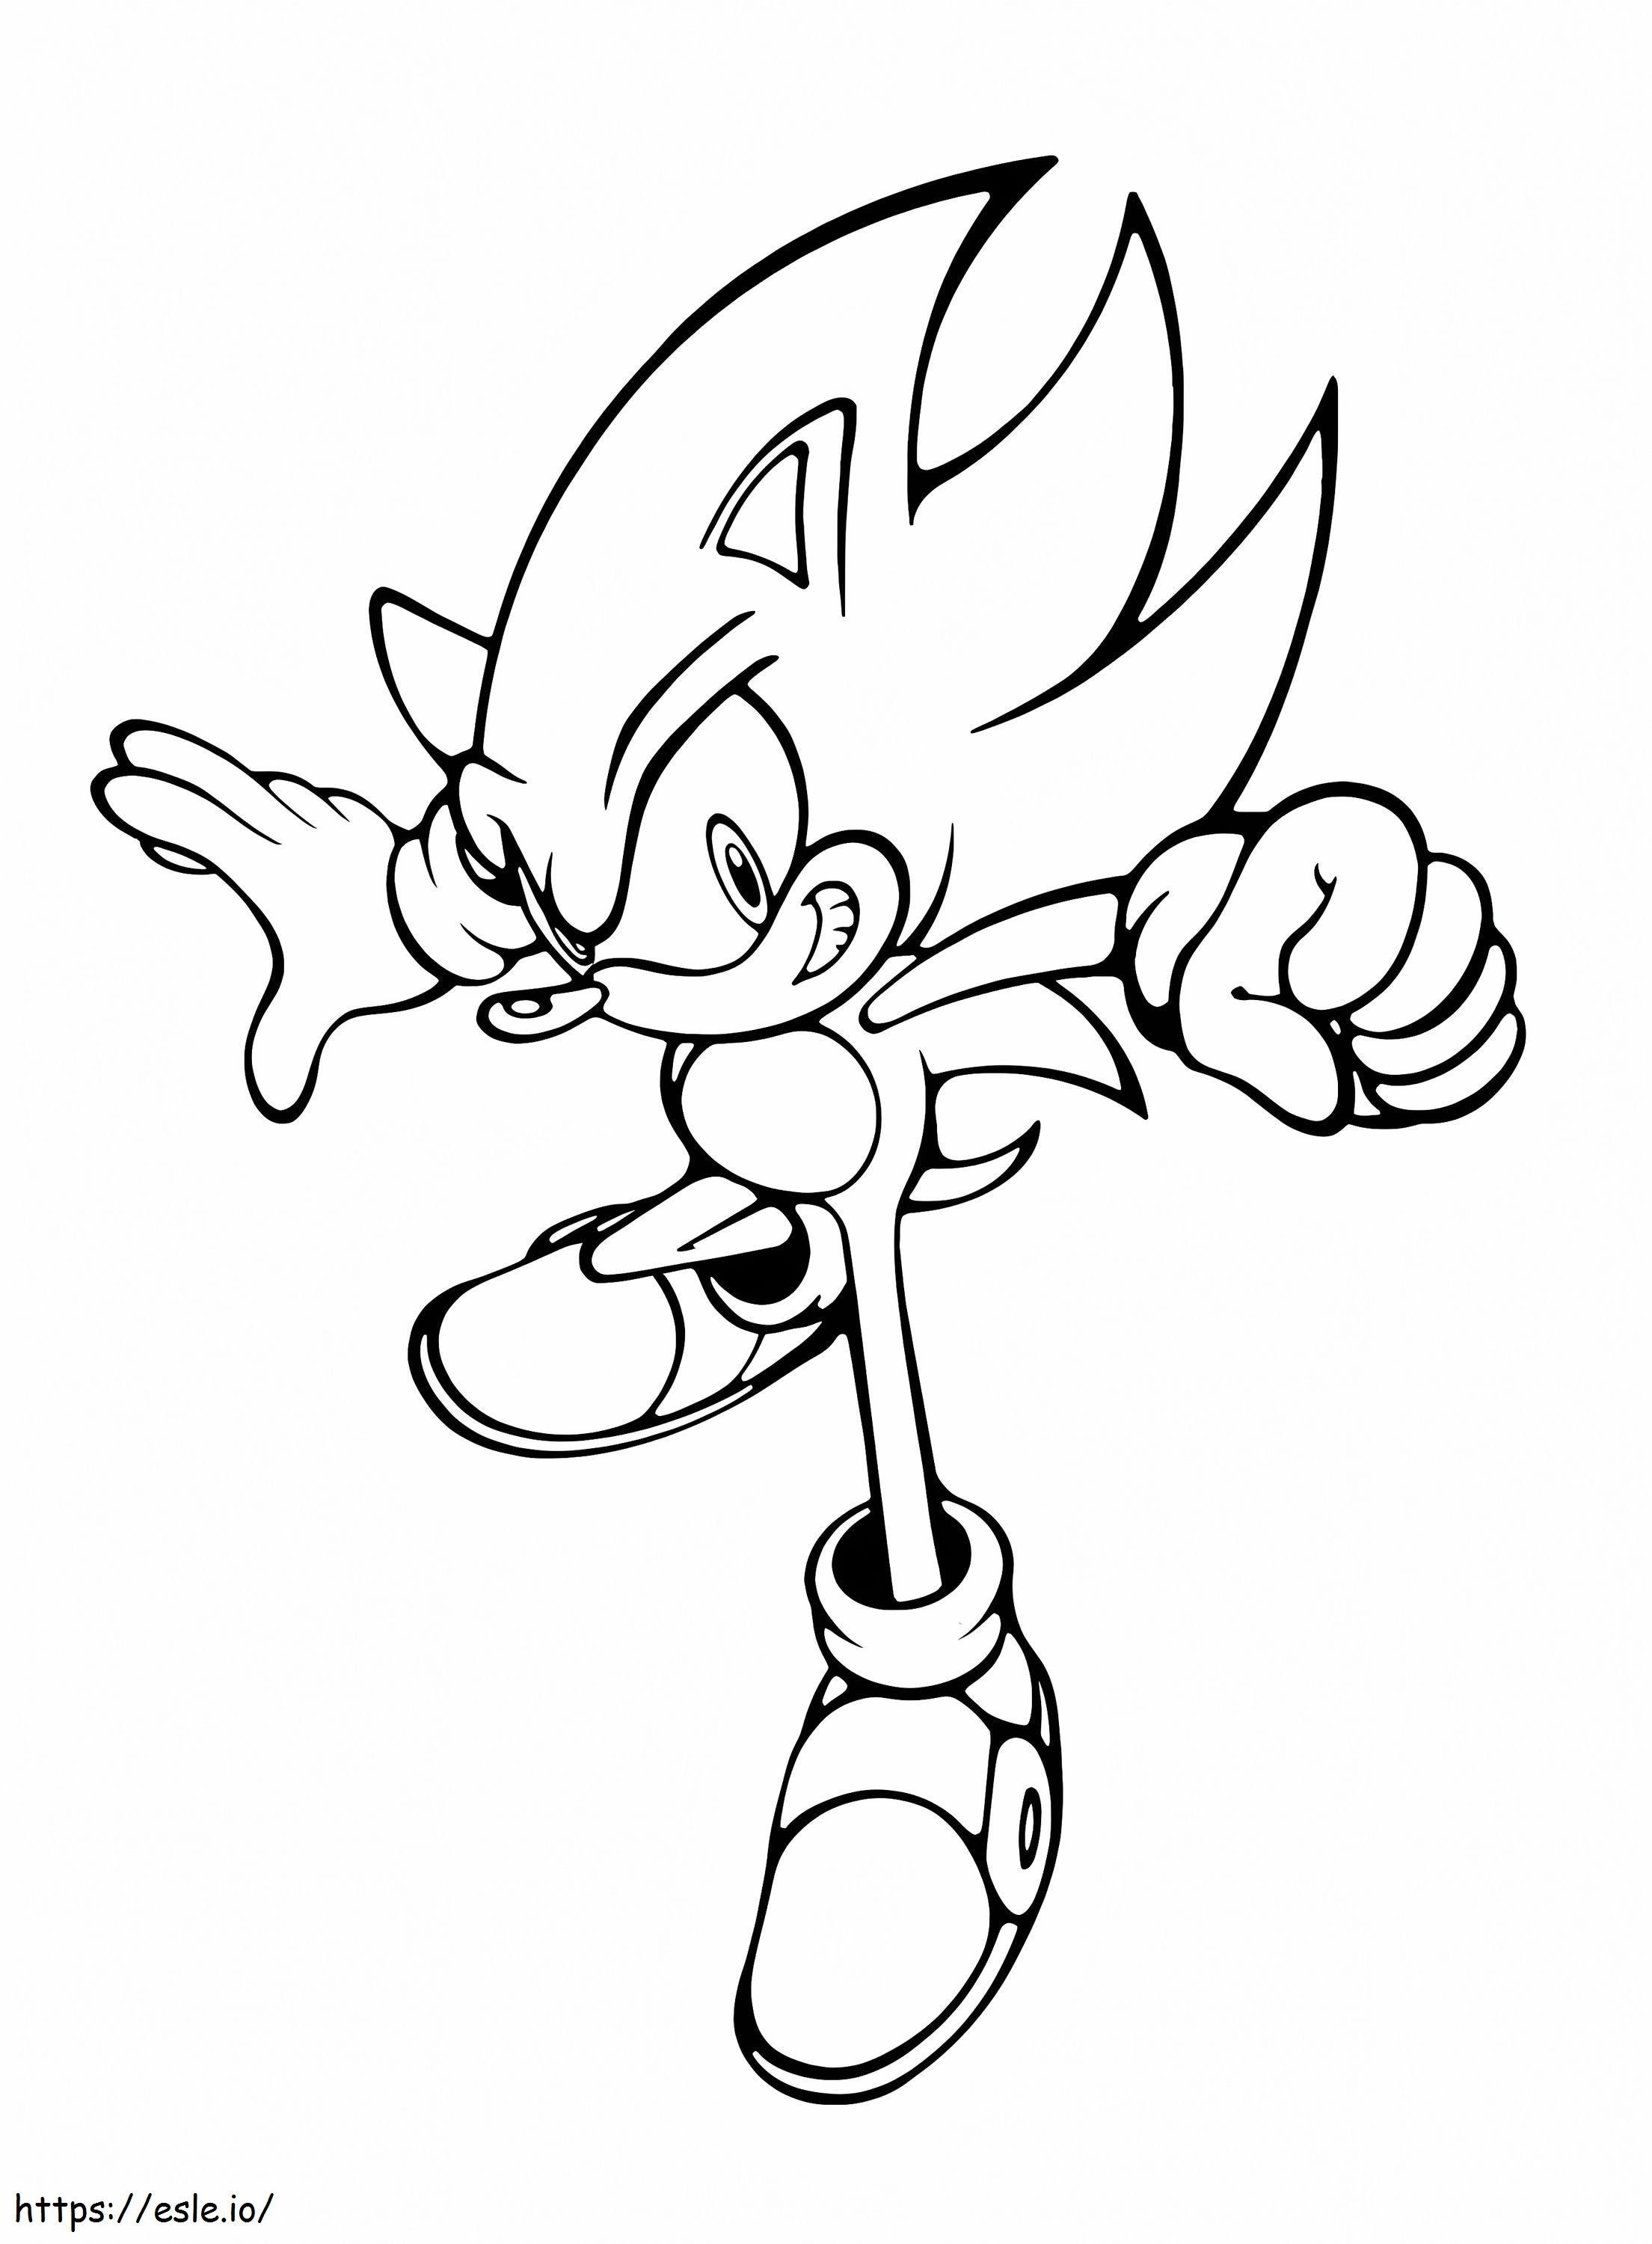 Drucken Sie Sonic ausmalbilder